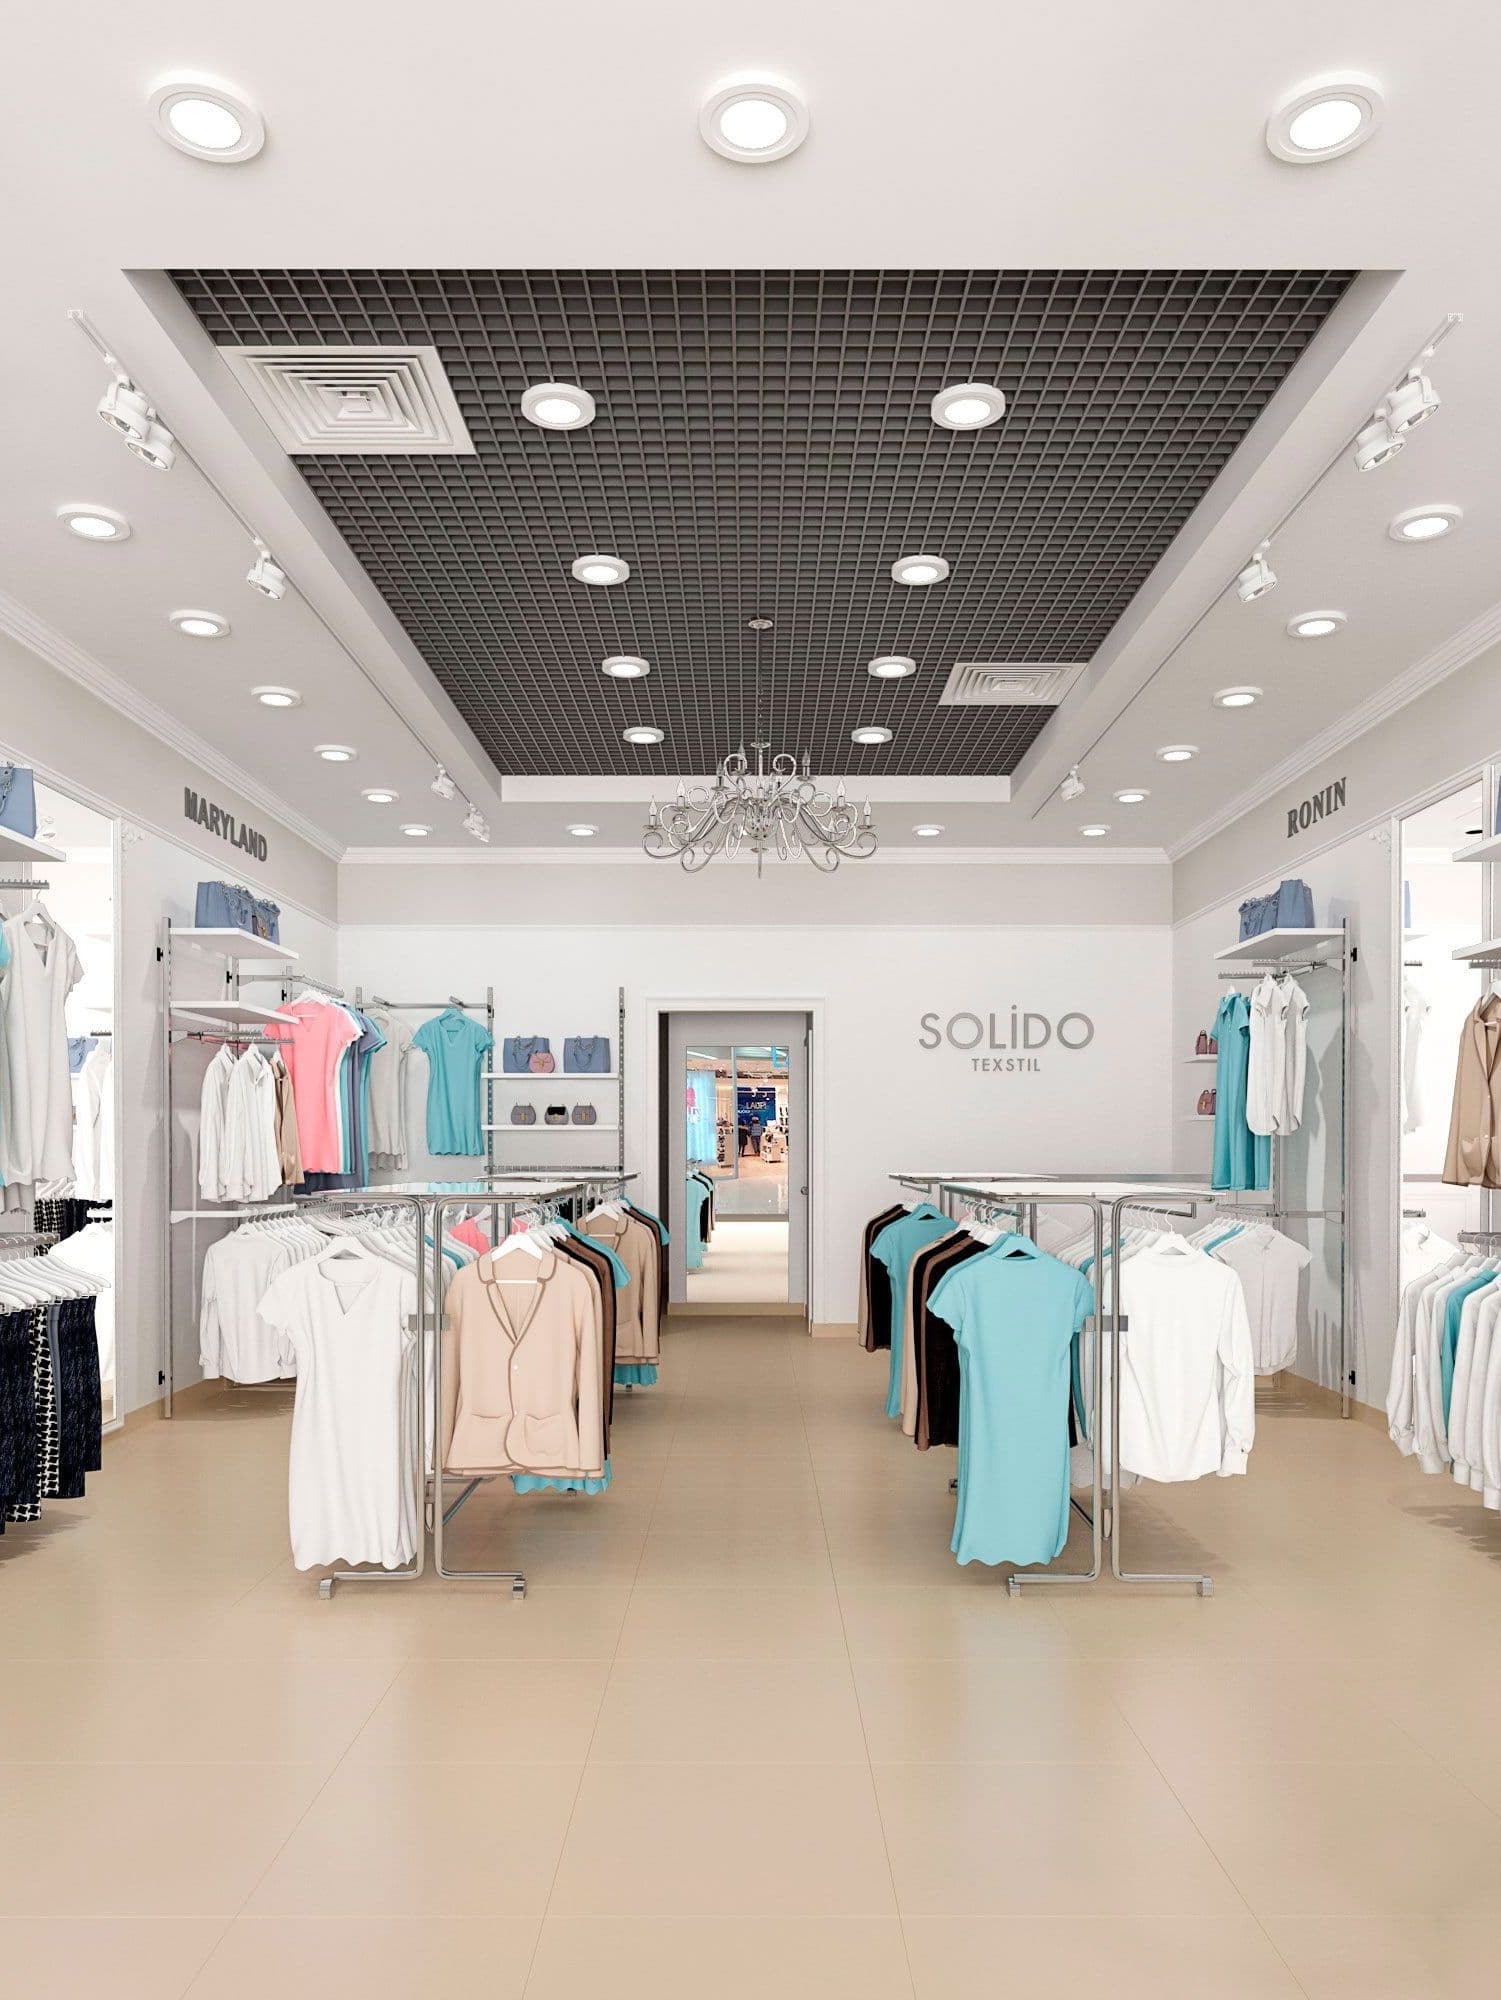 Дизайн магазина одежды в ТЦ Тау Галерея в легком классическом стиле, в светлых тонах, с большой люстрой и зеркалами, вид со стороны витрины, общий вид 1